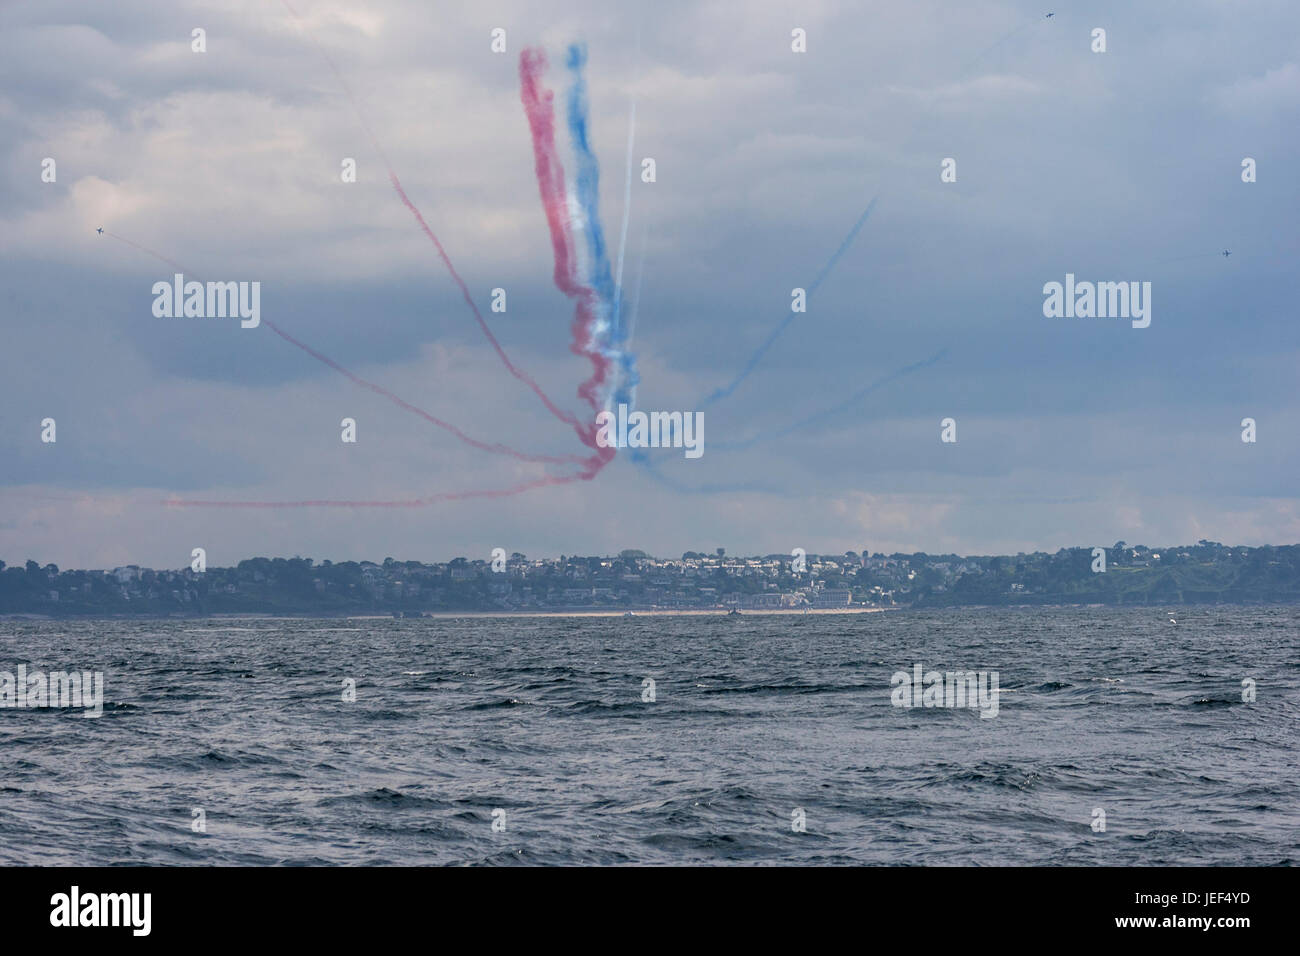 Spettacolo di volo con aeromobili dal francese Air Force, Alfa getti del francese Patrouille de France national display team. Foto Stock